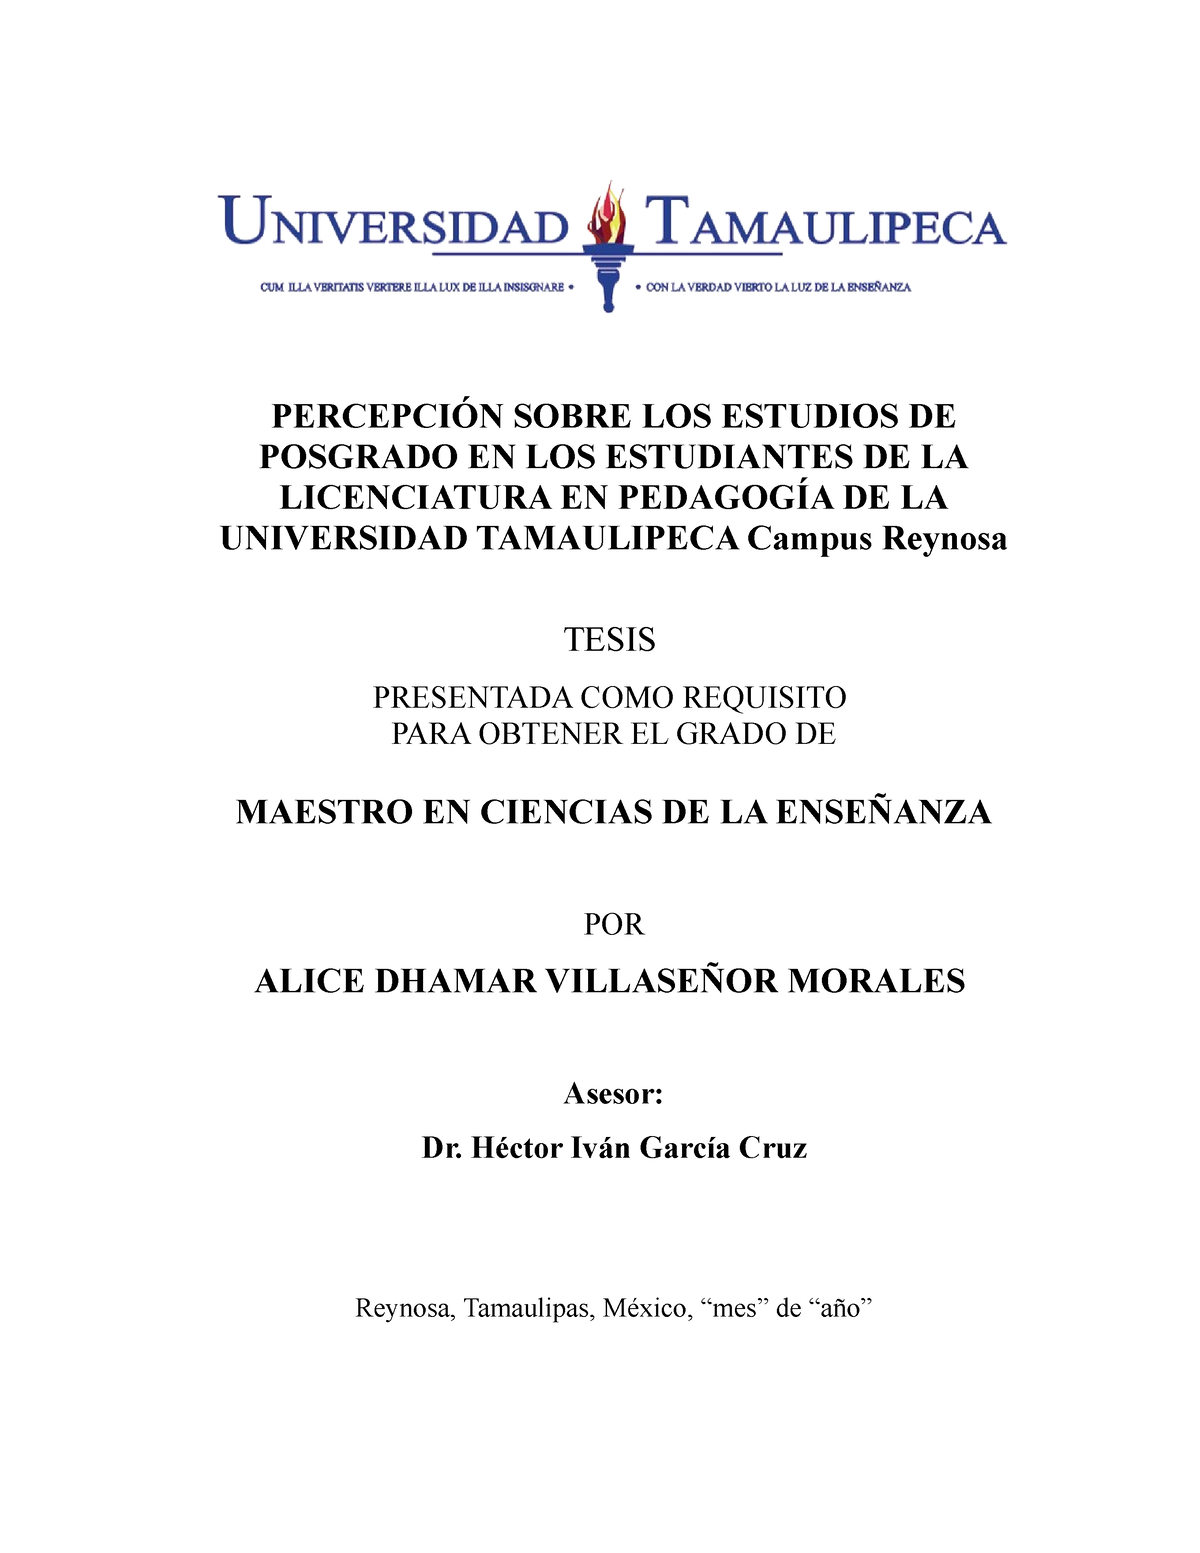 UNIVERSIDAD TAMAULIPECA HACE ENTREGA DE TÍTULOS UNIVERSITARIOS –  Universidad Tamaulipeca